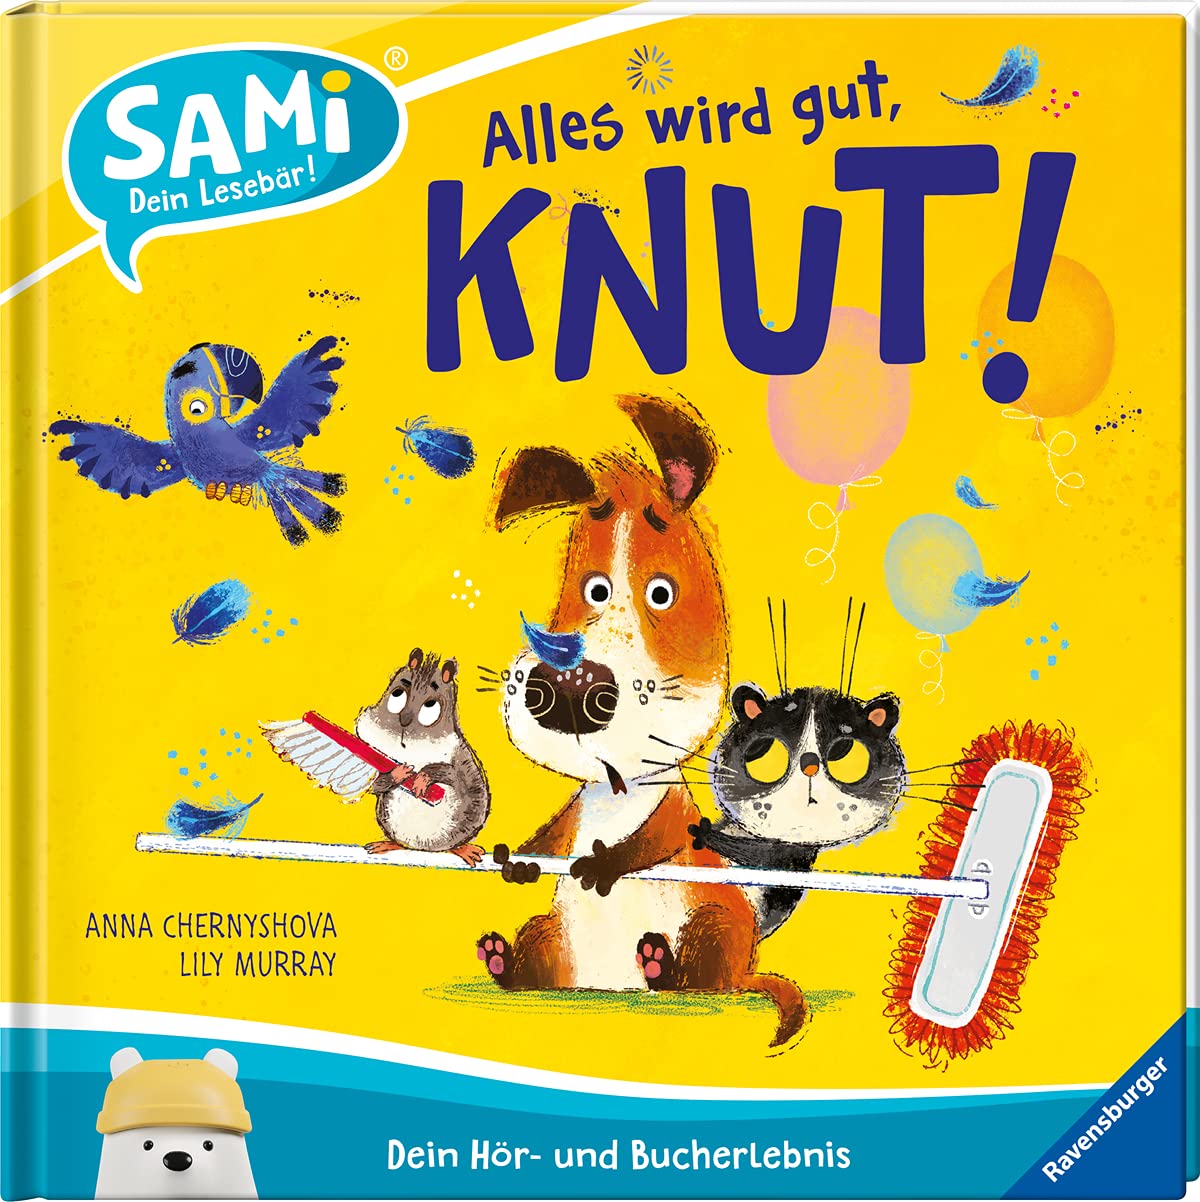 SAMi – Alles wird gut, Knut!